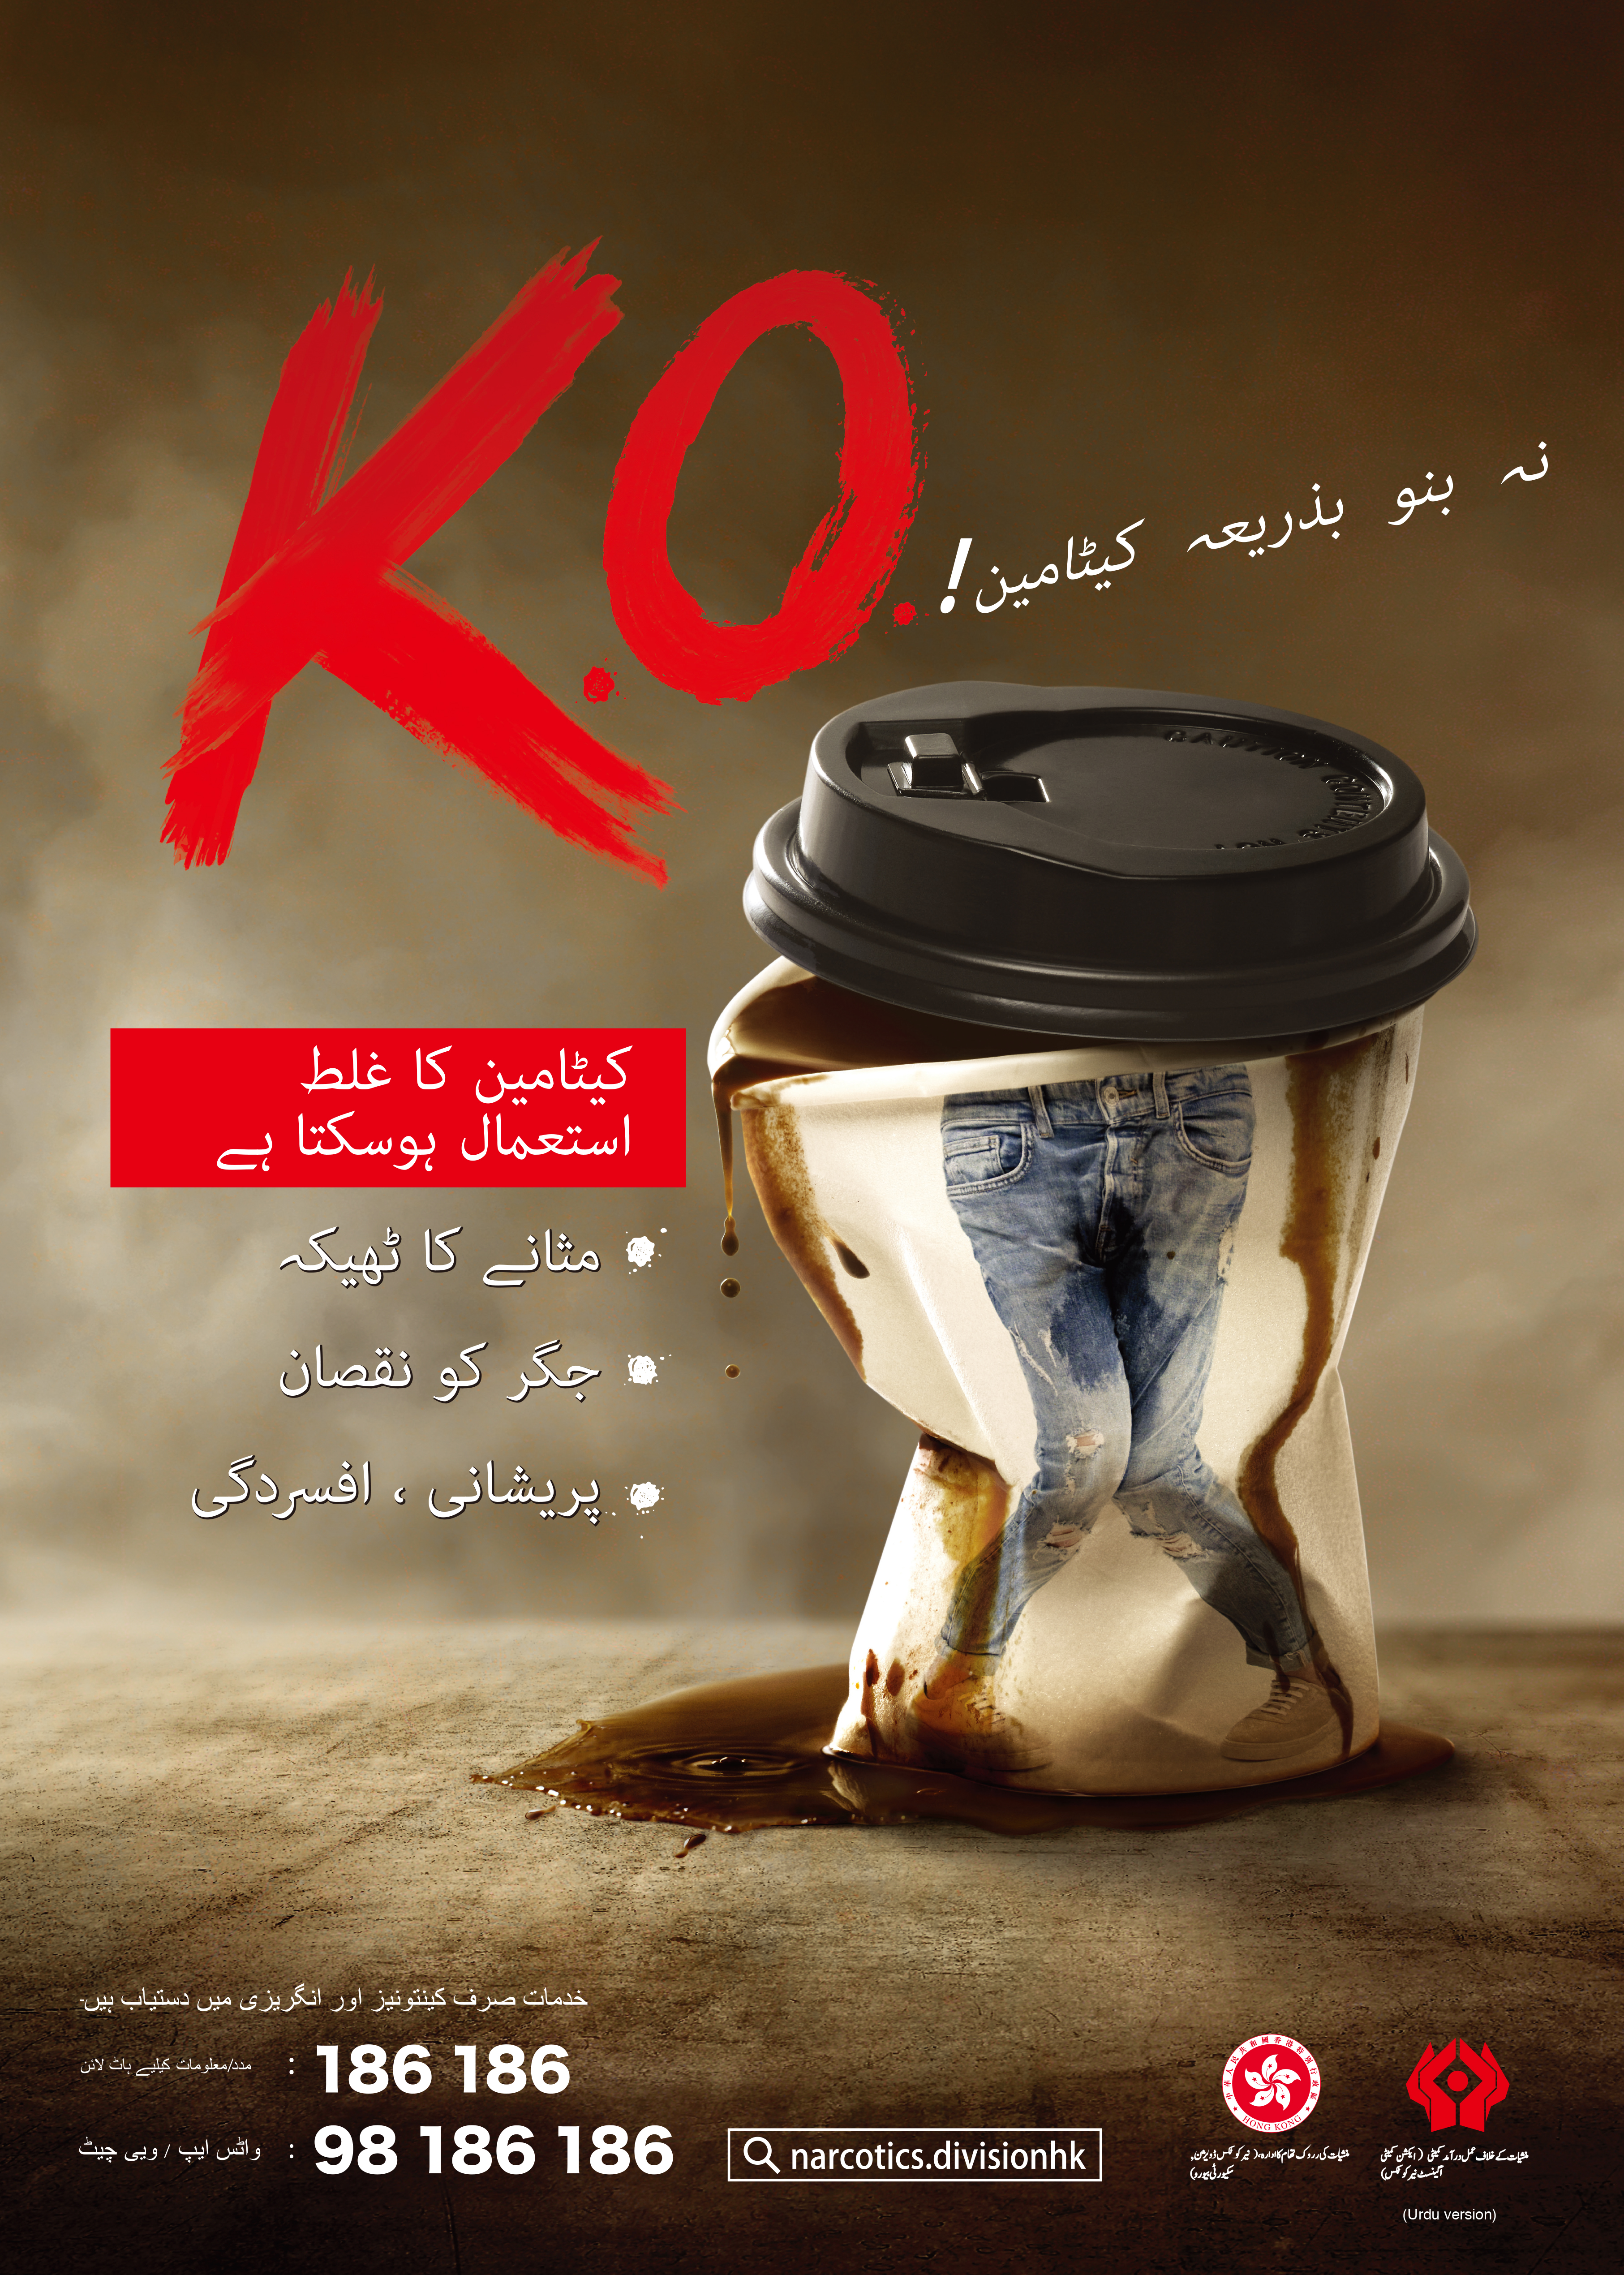 Anti-drug poster Dont be K.O.d by Ketamine! - Urdu version